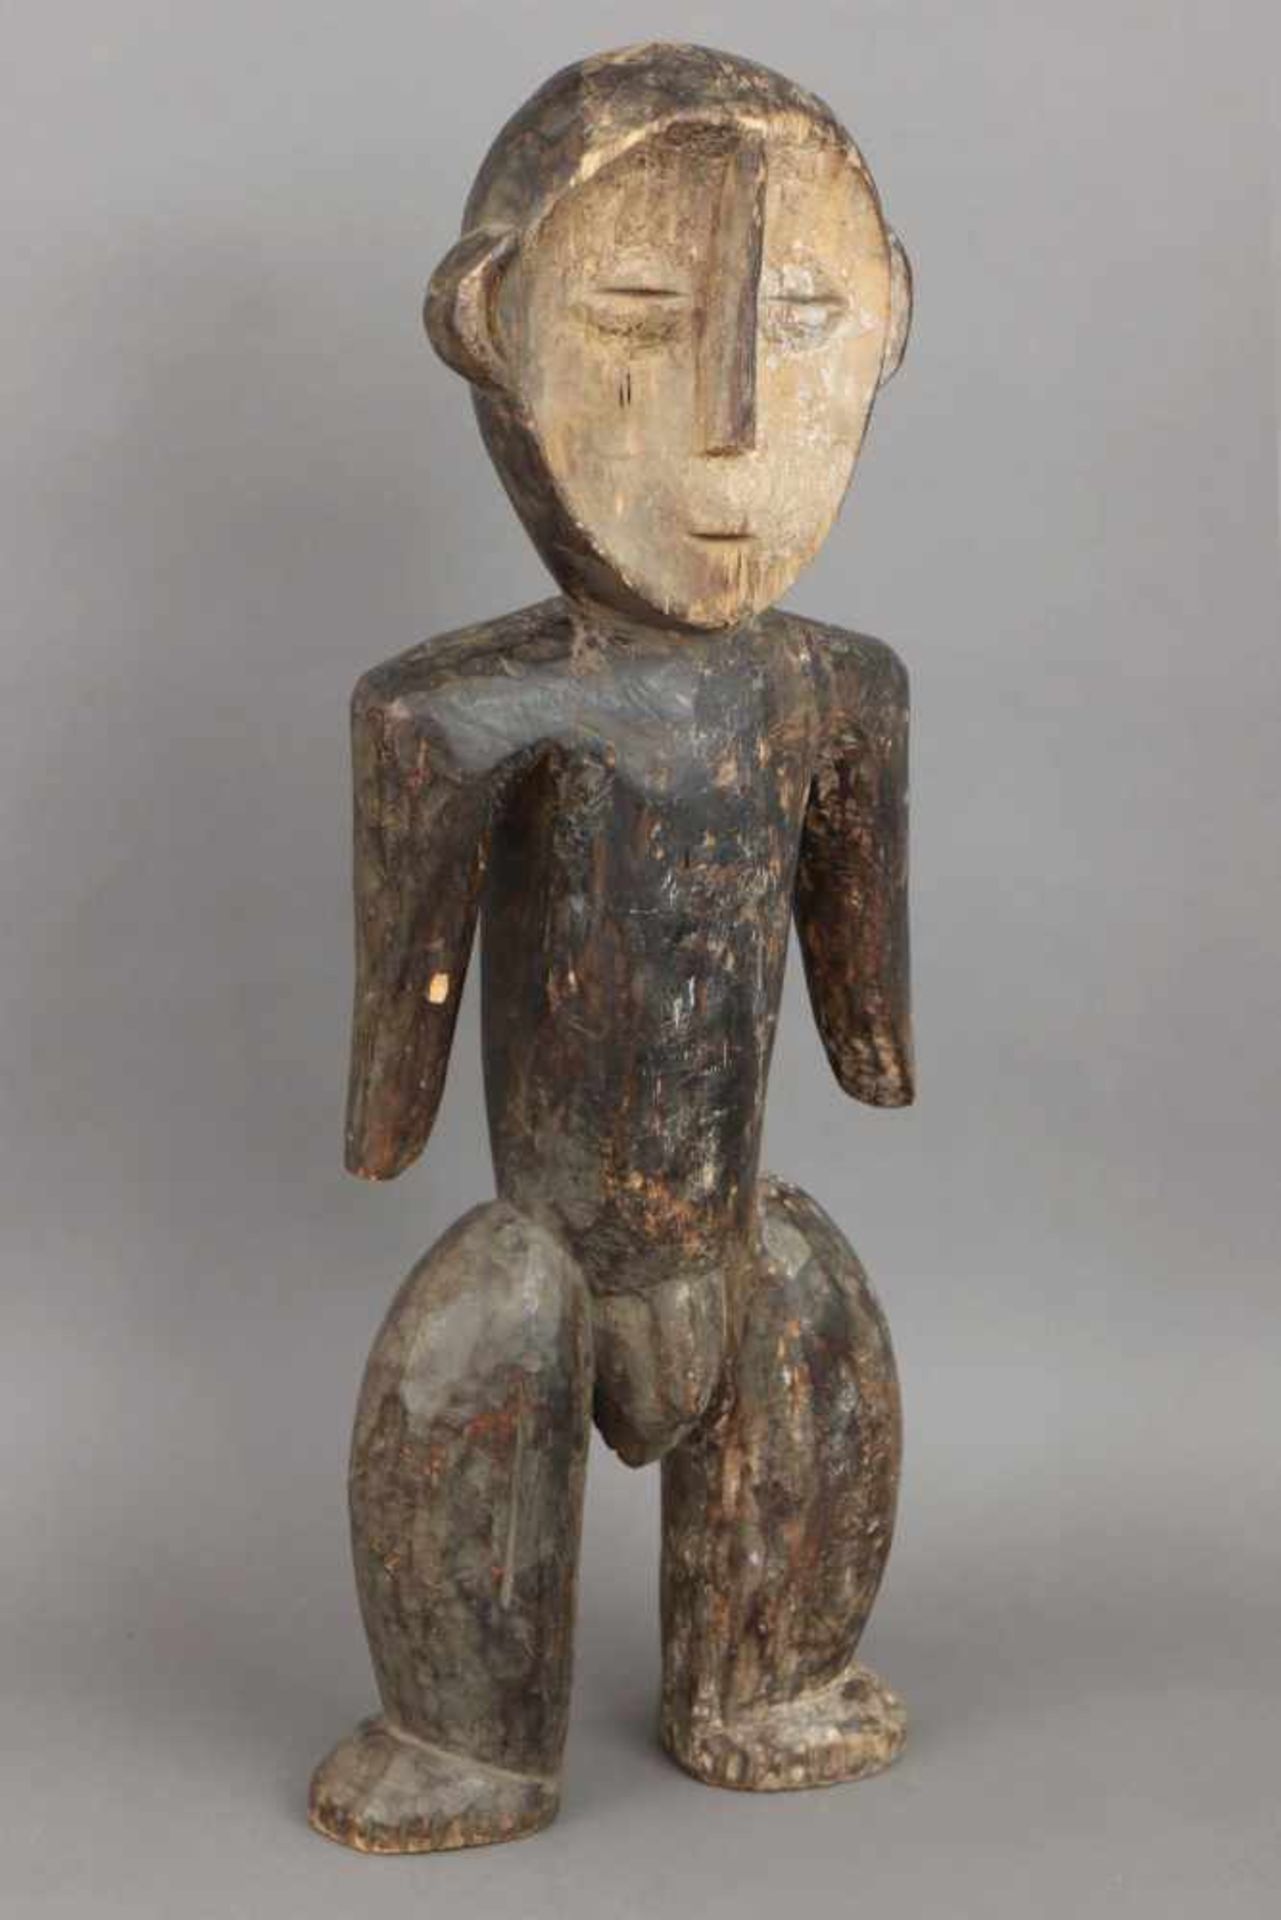 Afrikanische Ahnenfigur Holz, geschnitzt, geschwärzt und im Gesicht weiß gekalkt (Kaolin), wohl